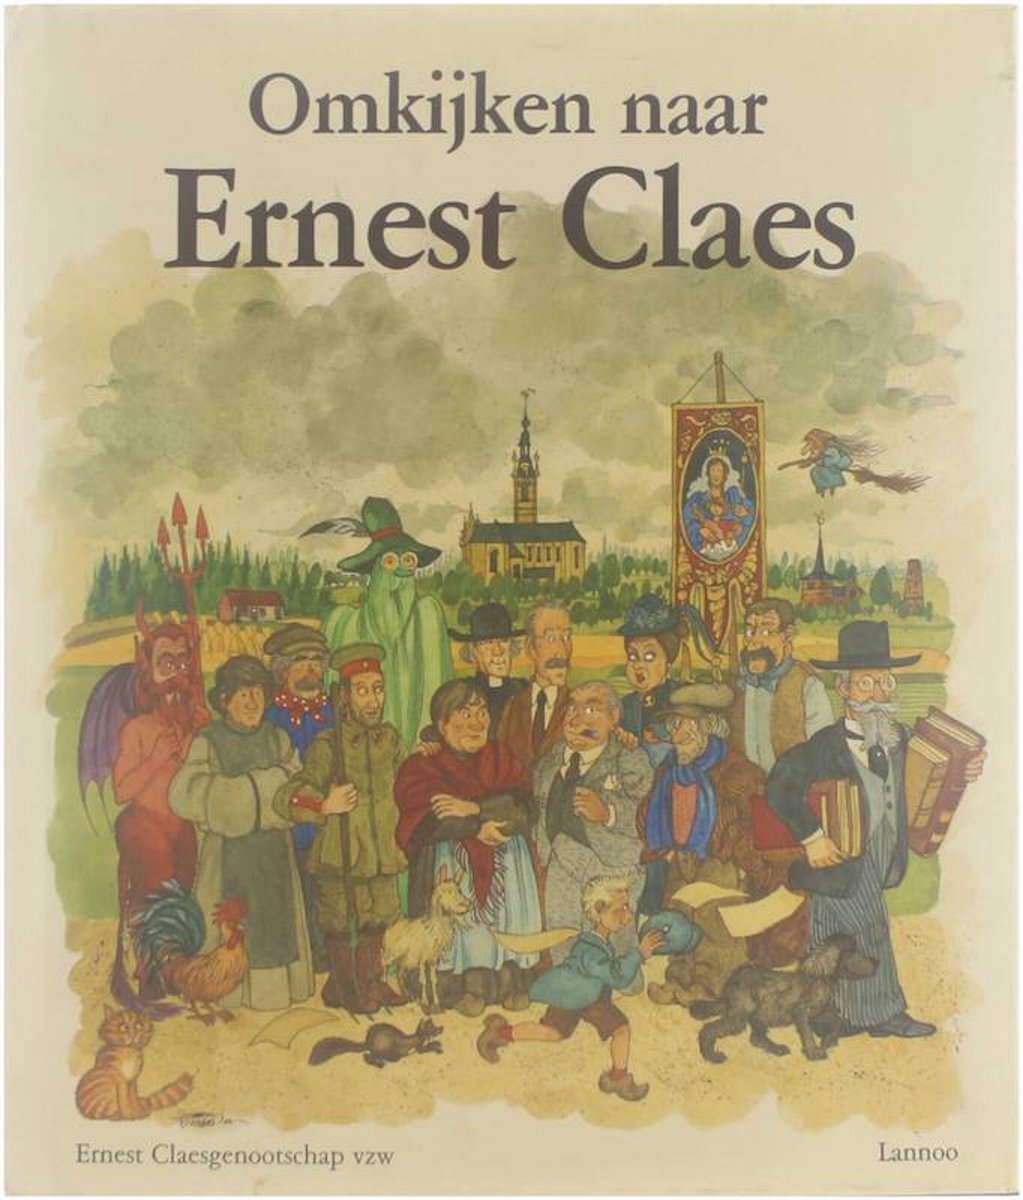 Omkijken naar Ernest Claes